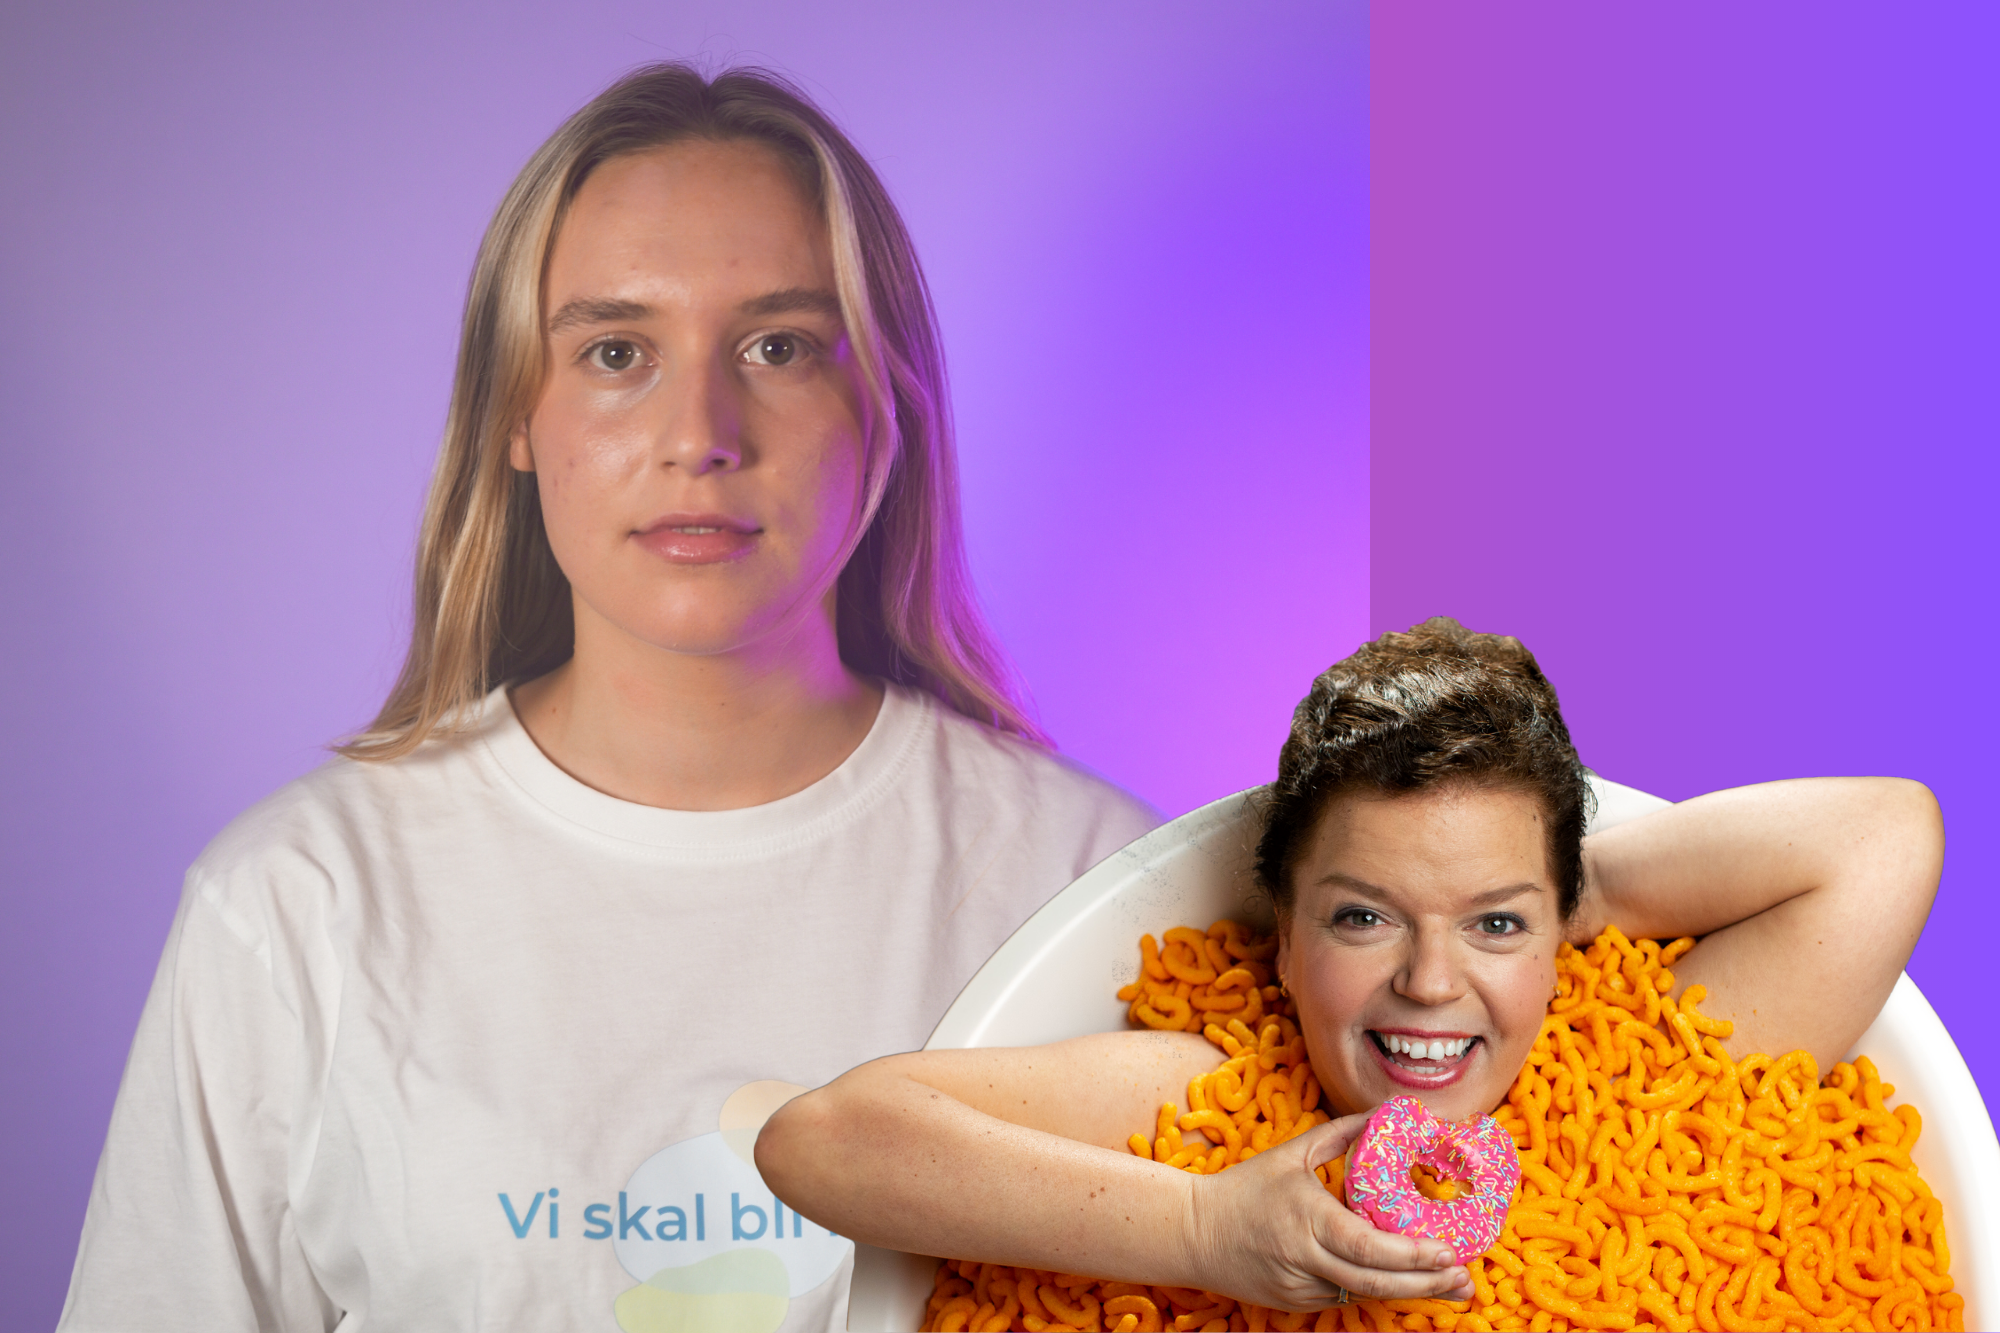 Ung kvinne i kvit t-skjorte og kollasj med Else Kåss Furuseth i badekar med ostepop og doughnut